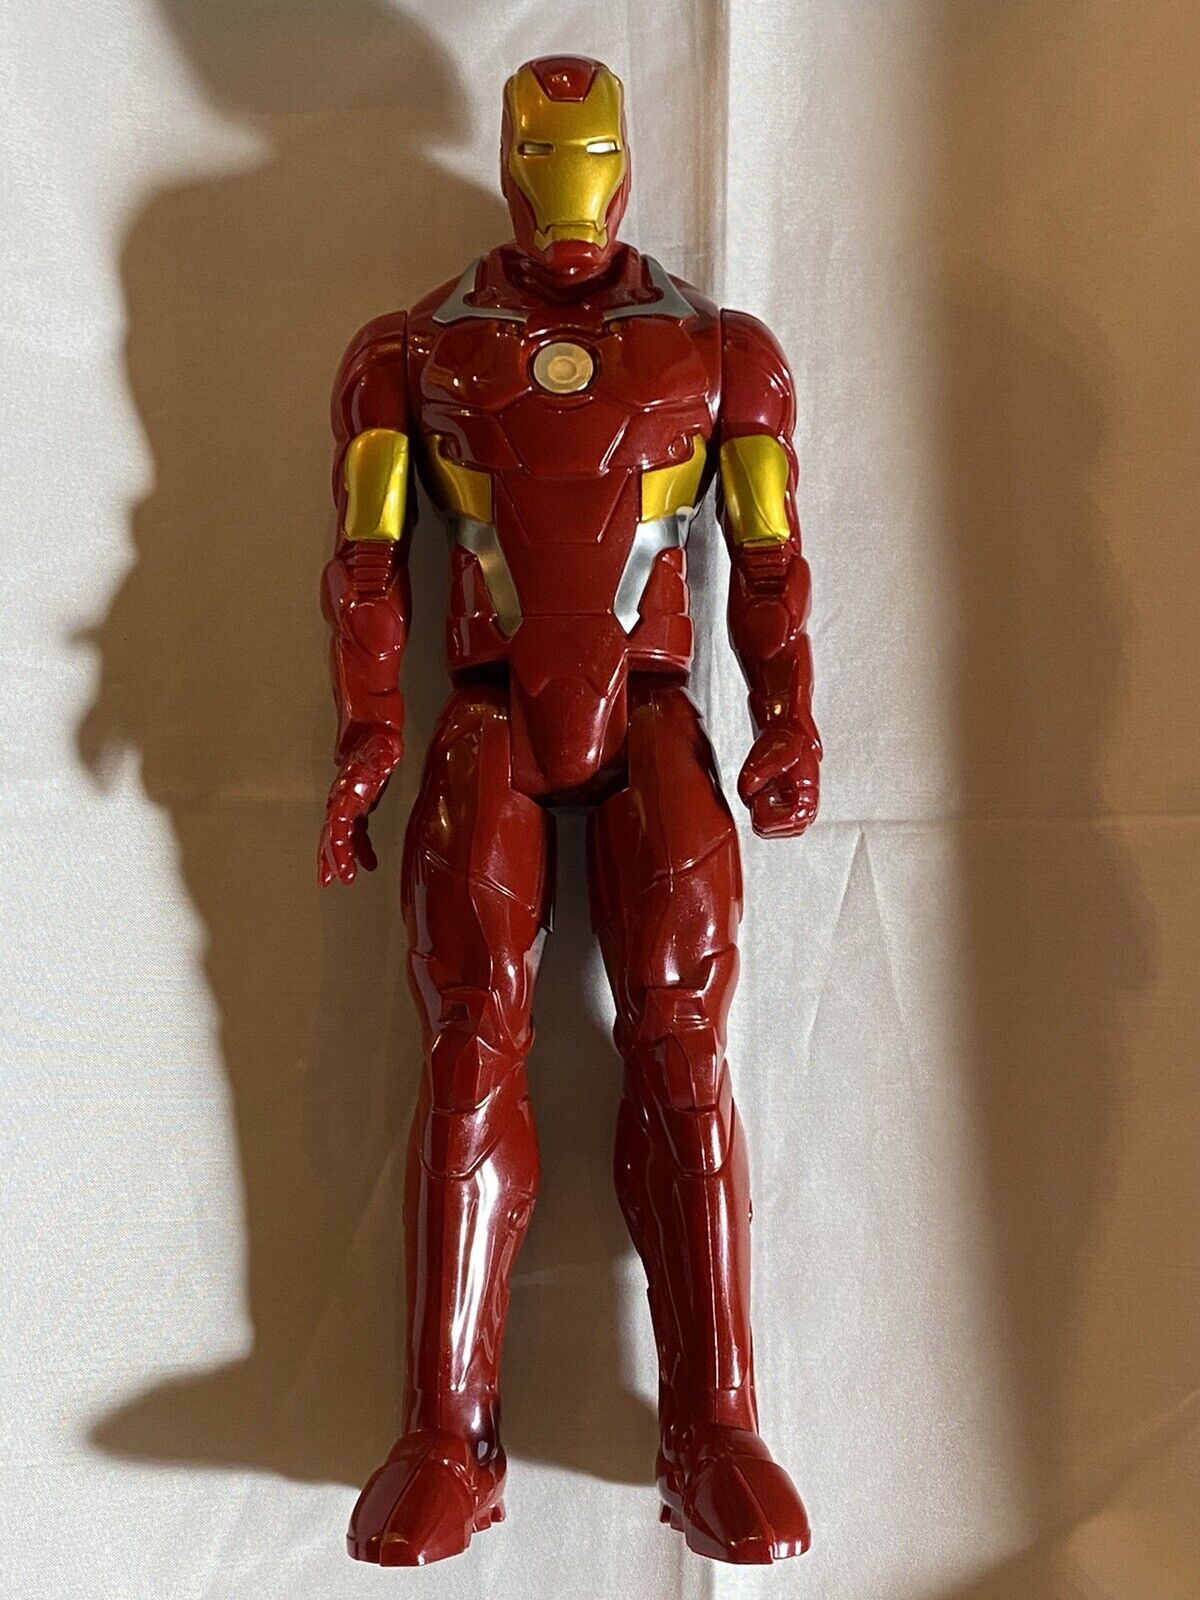 Marvel Hasbro Iron Man 2013 Action Figure 11 Inch Tall